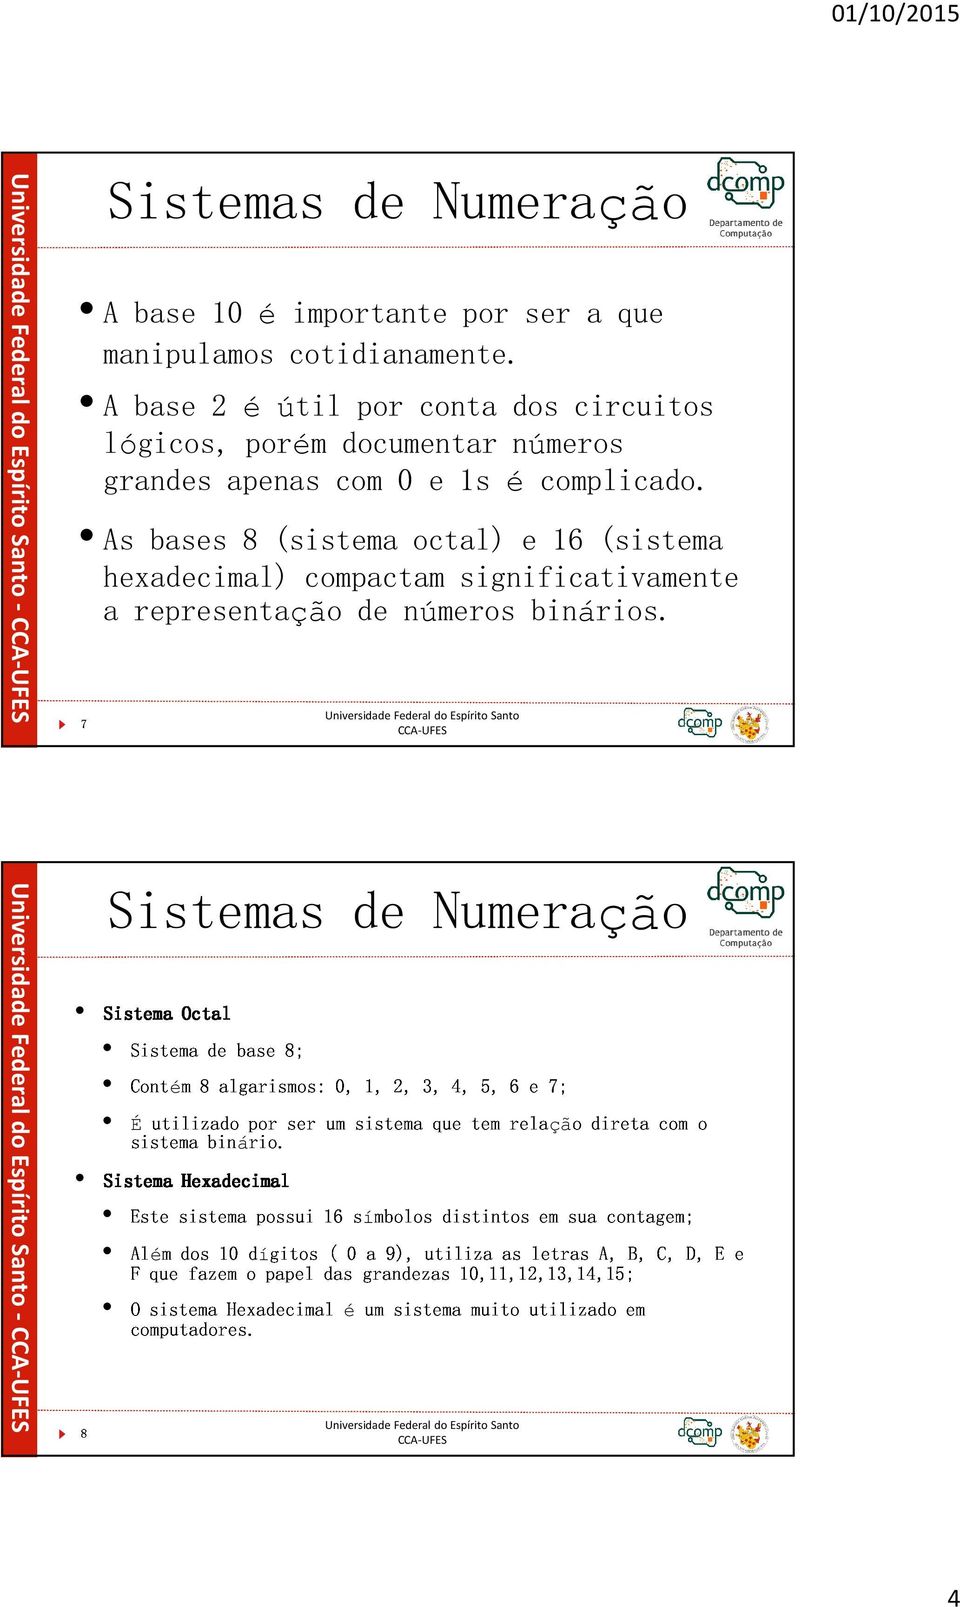 As bases 8 (sistema octal) e 16 (sistema 7hexadecimal) compactam significativamente a representação de números binários.